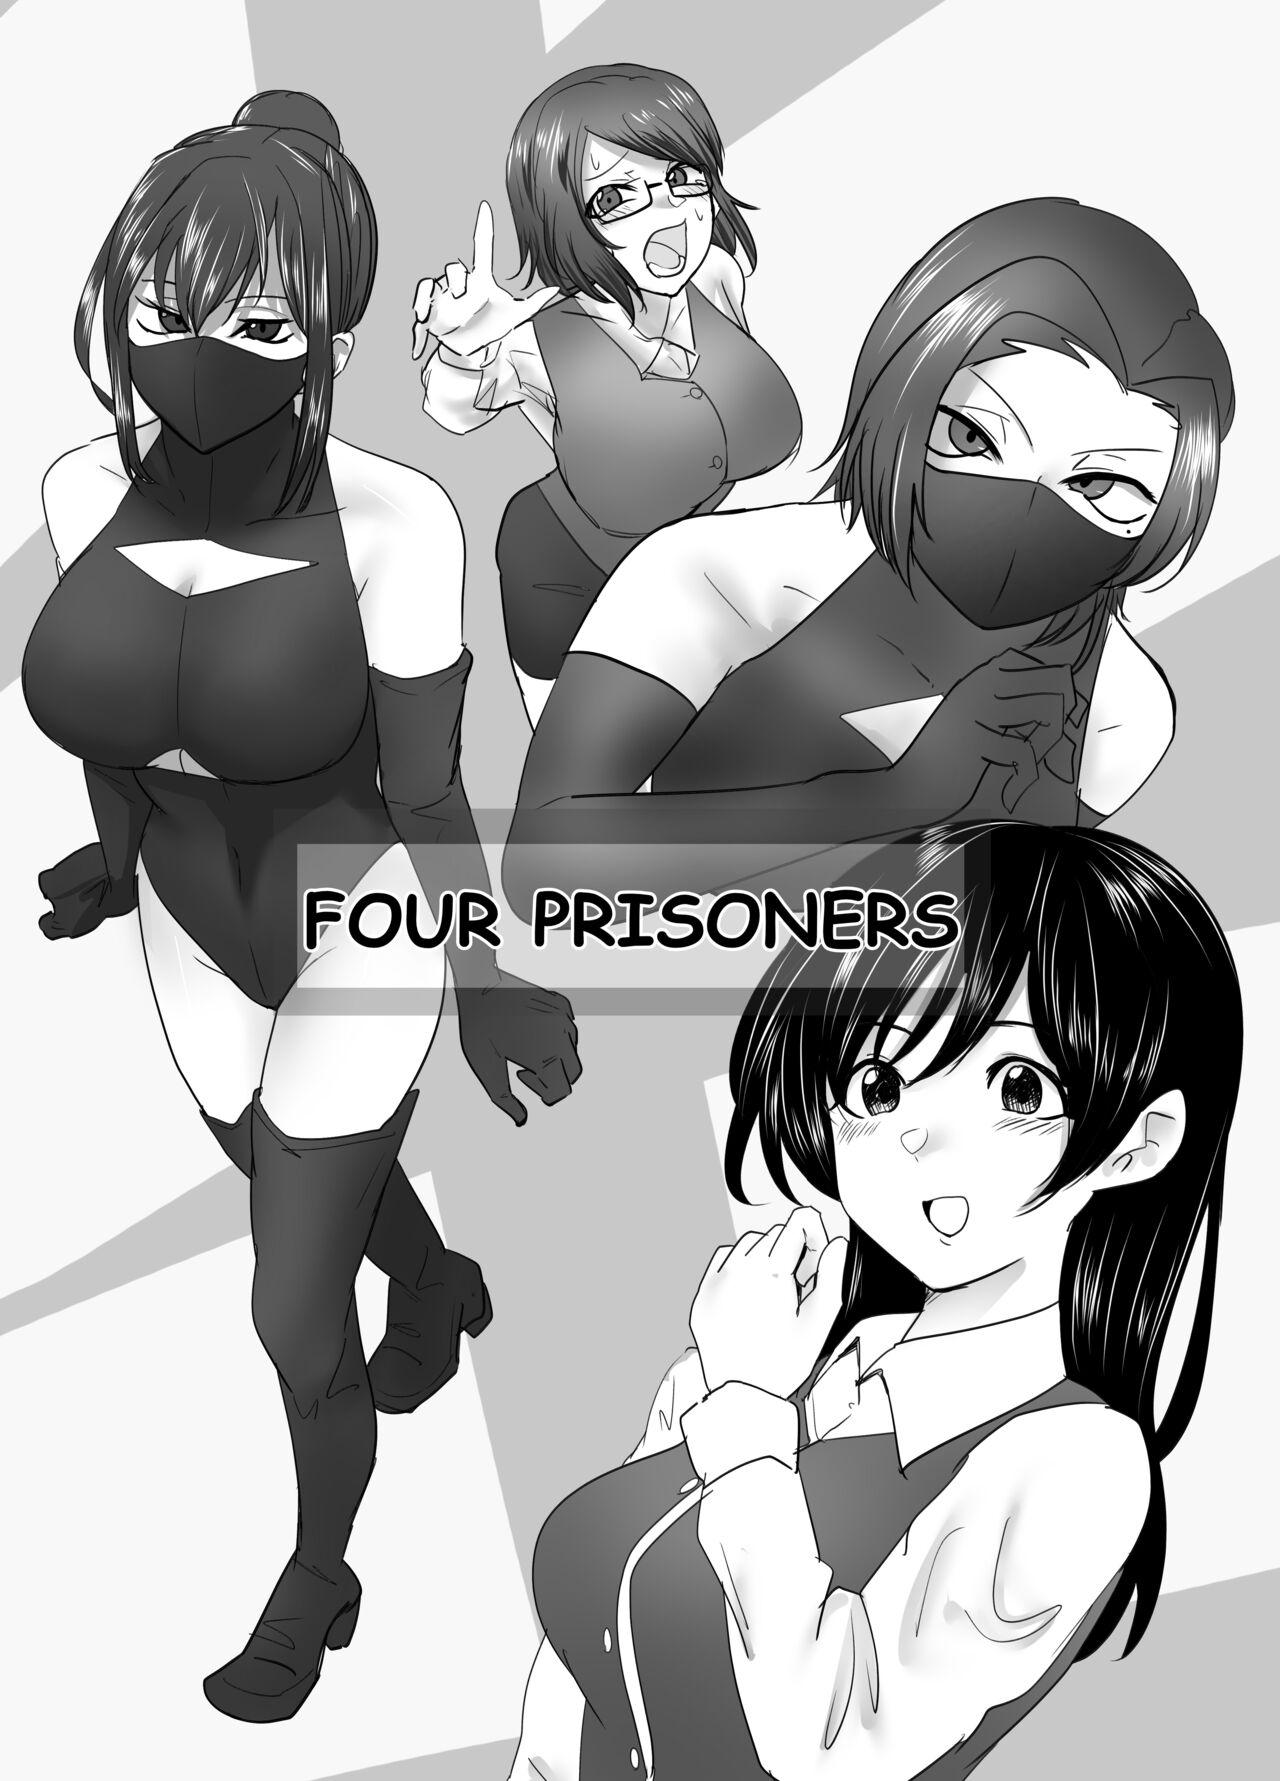 Suck Cock Four prisoners Sesso - Picture 1